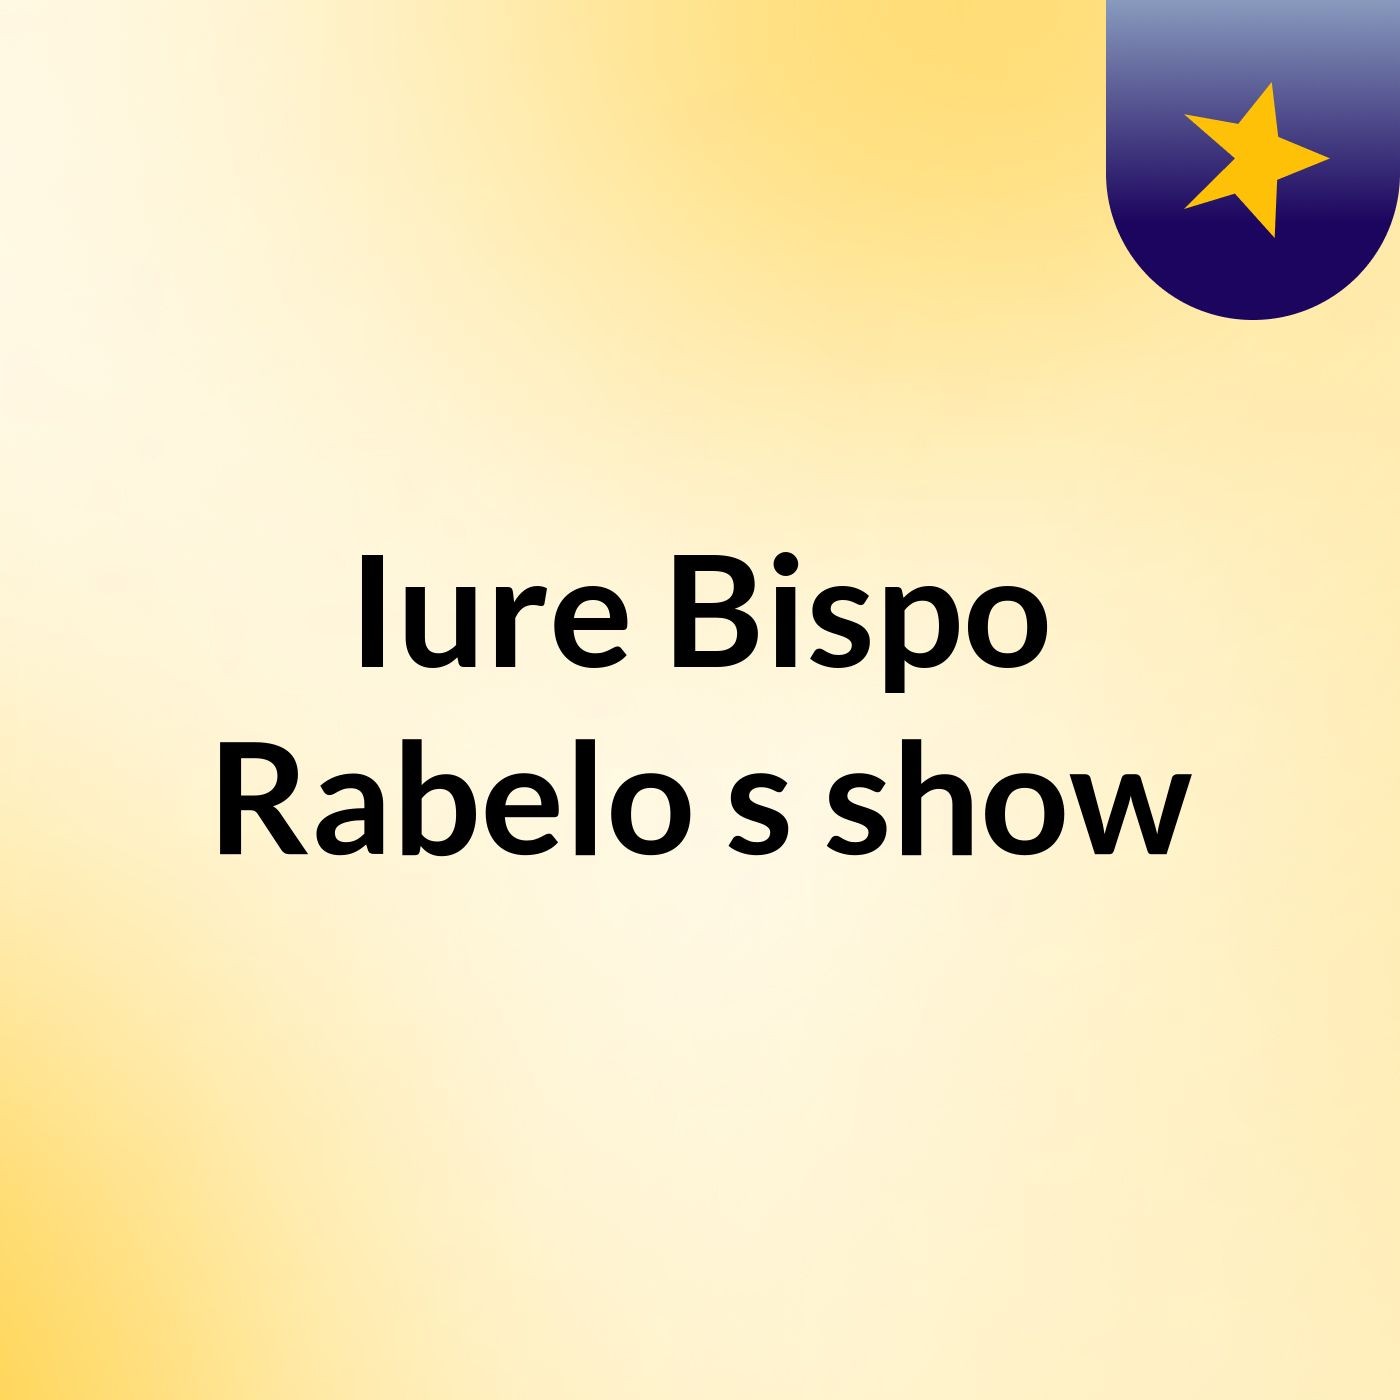 Iure Bispo Rabelo's show